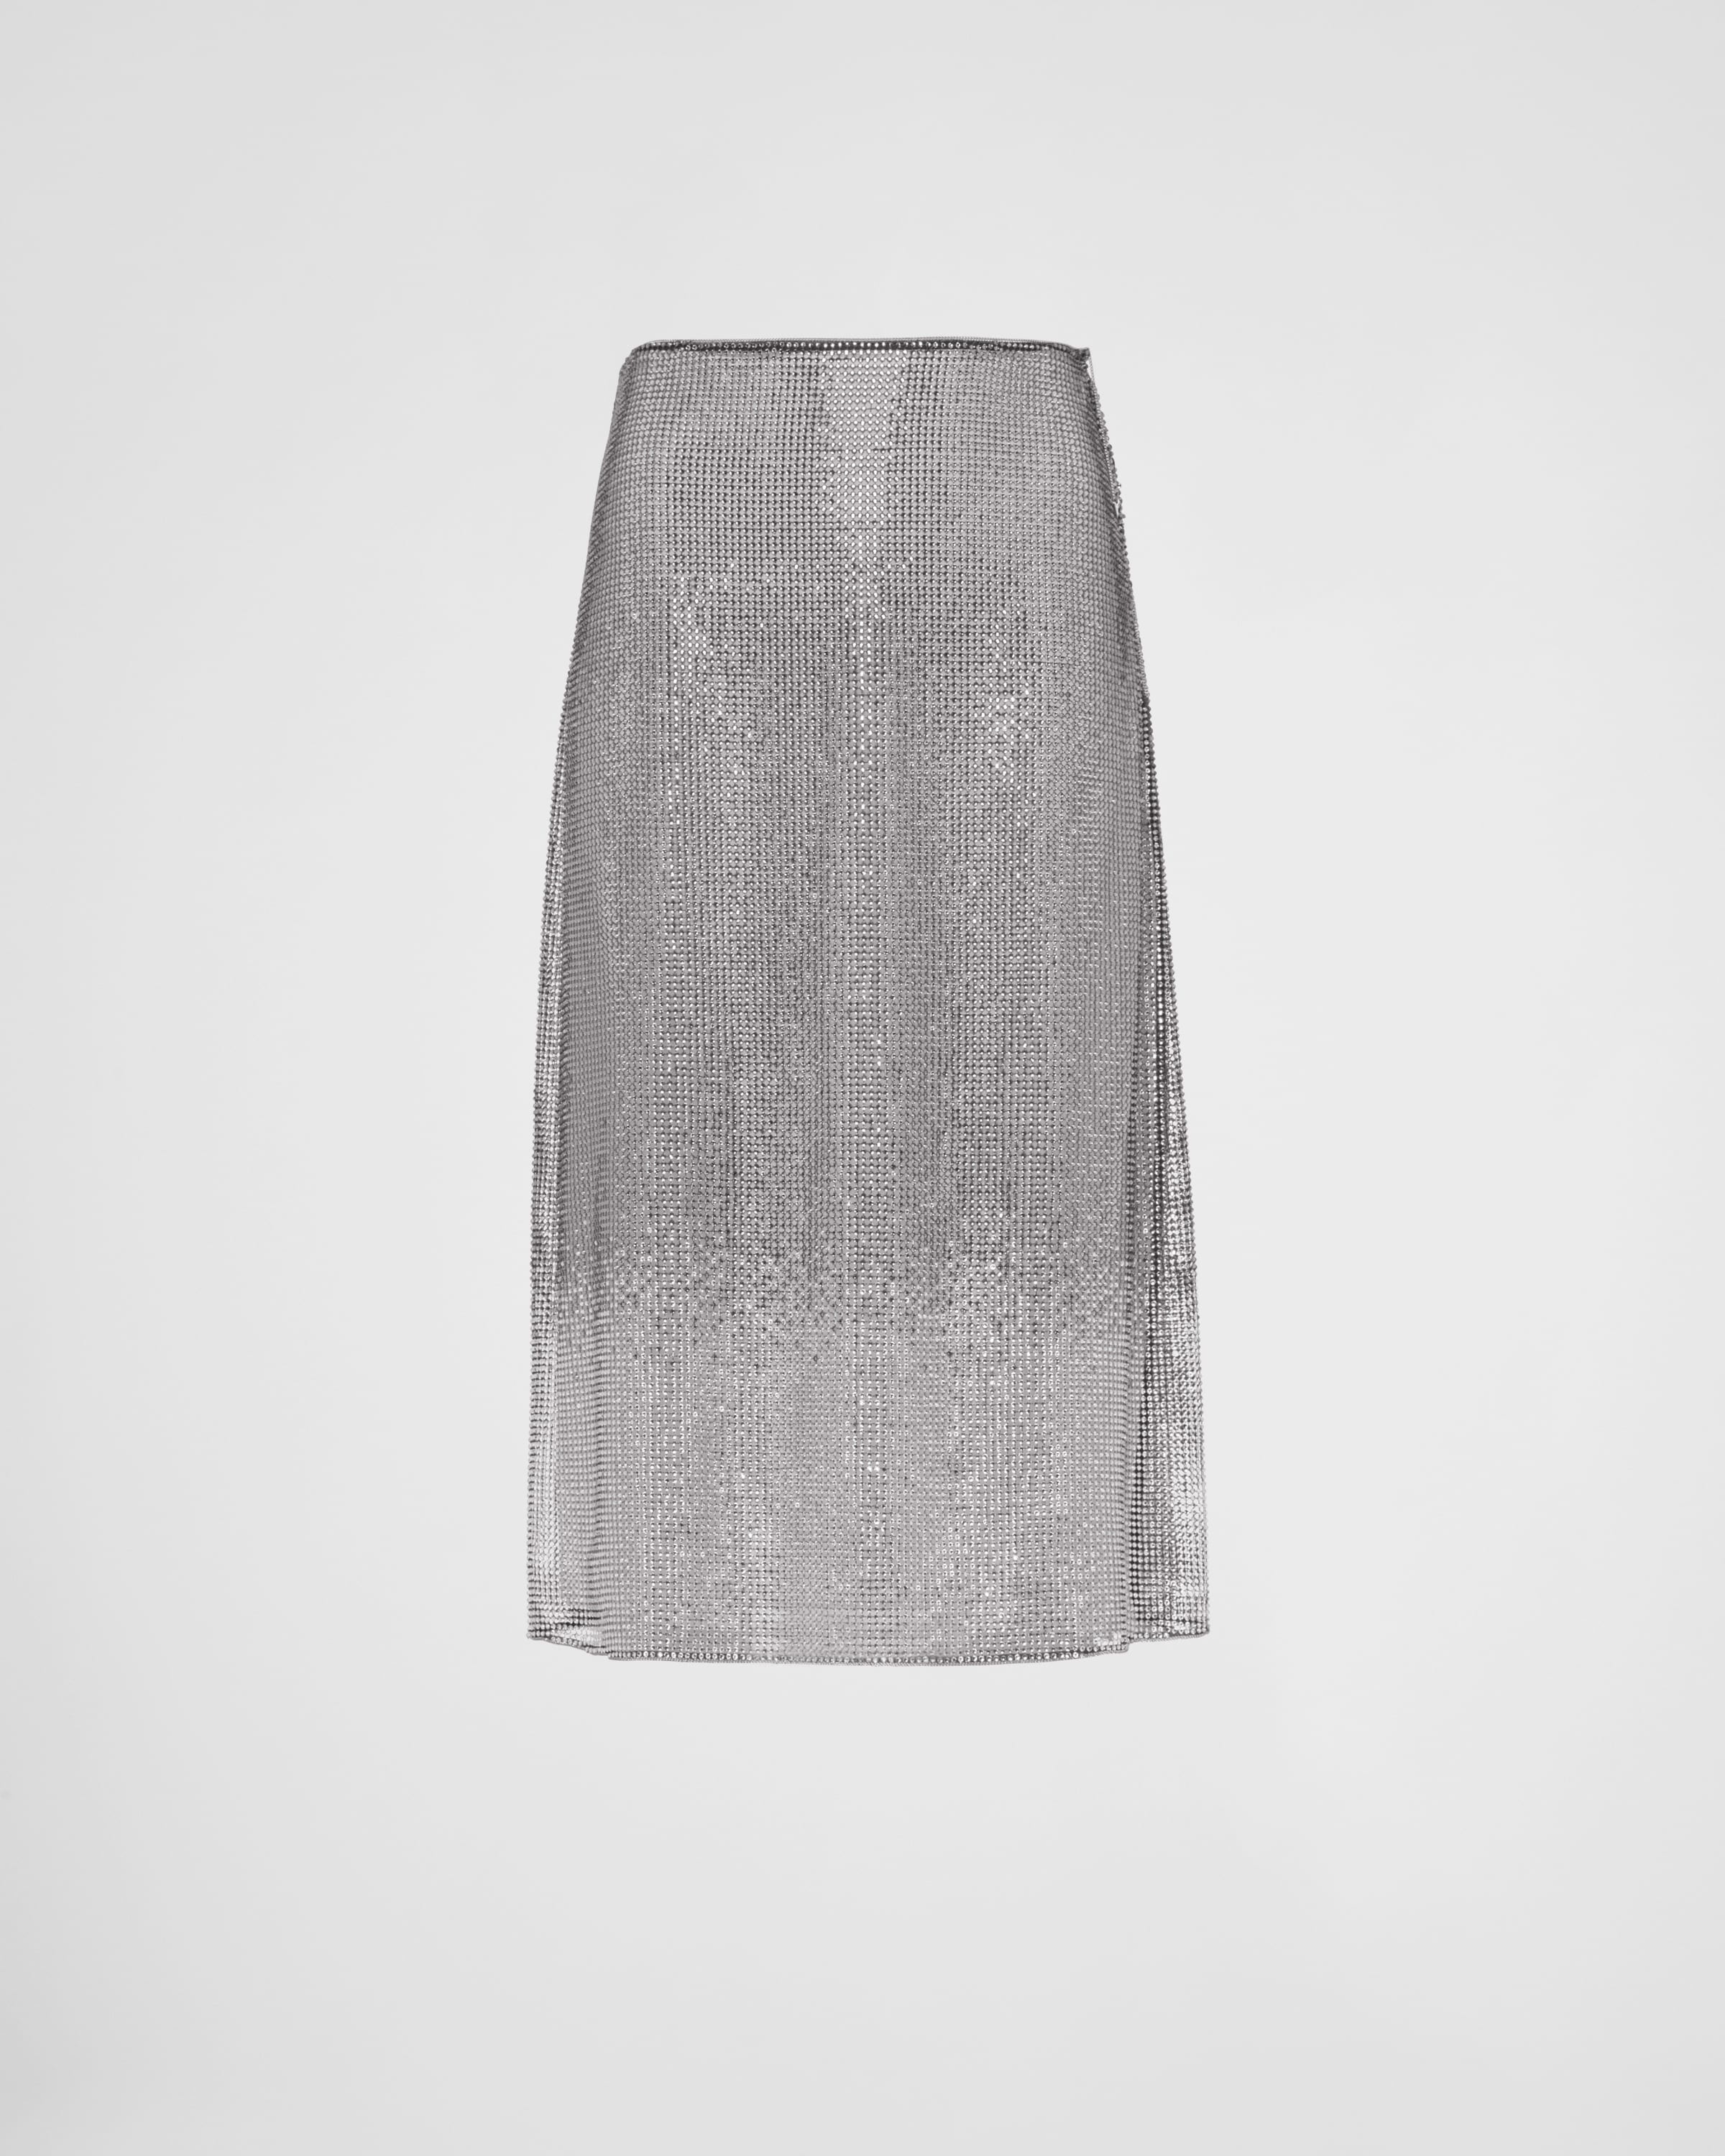 Embroidered rhinestone mesh midi-skirt - 1